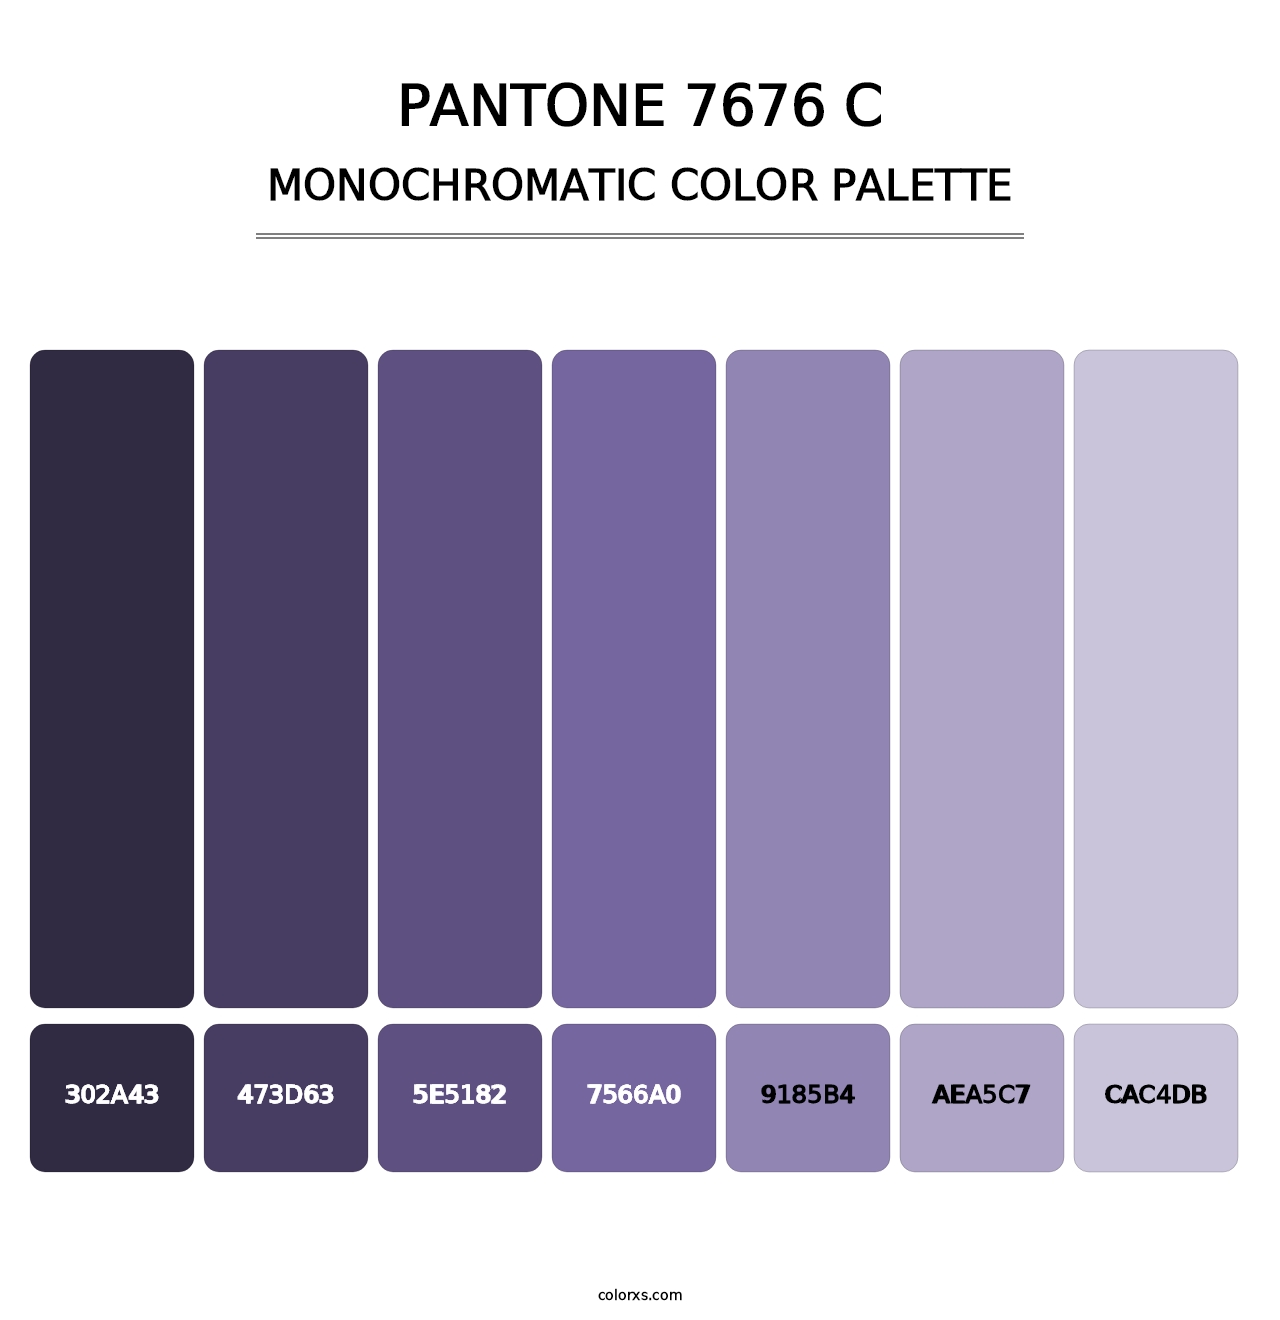 PANTONE 7676 C - Monochromatic Color Palette